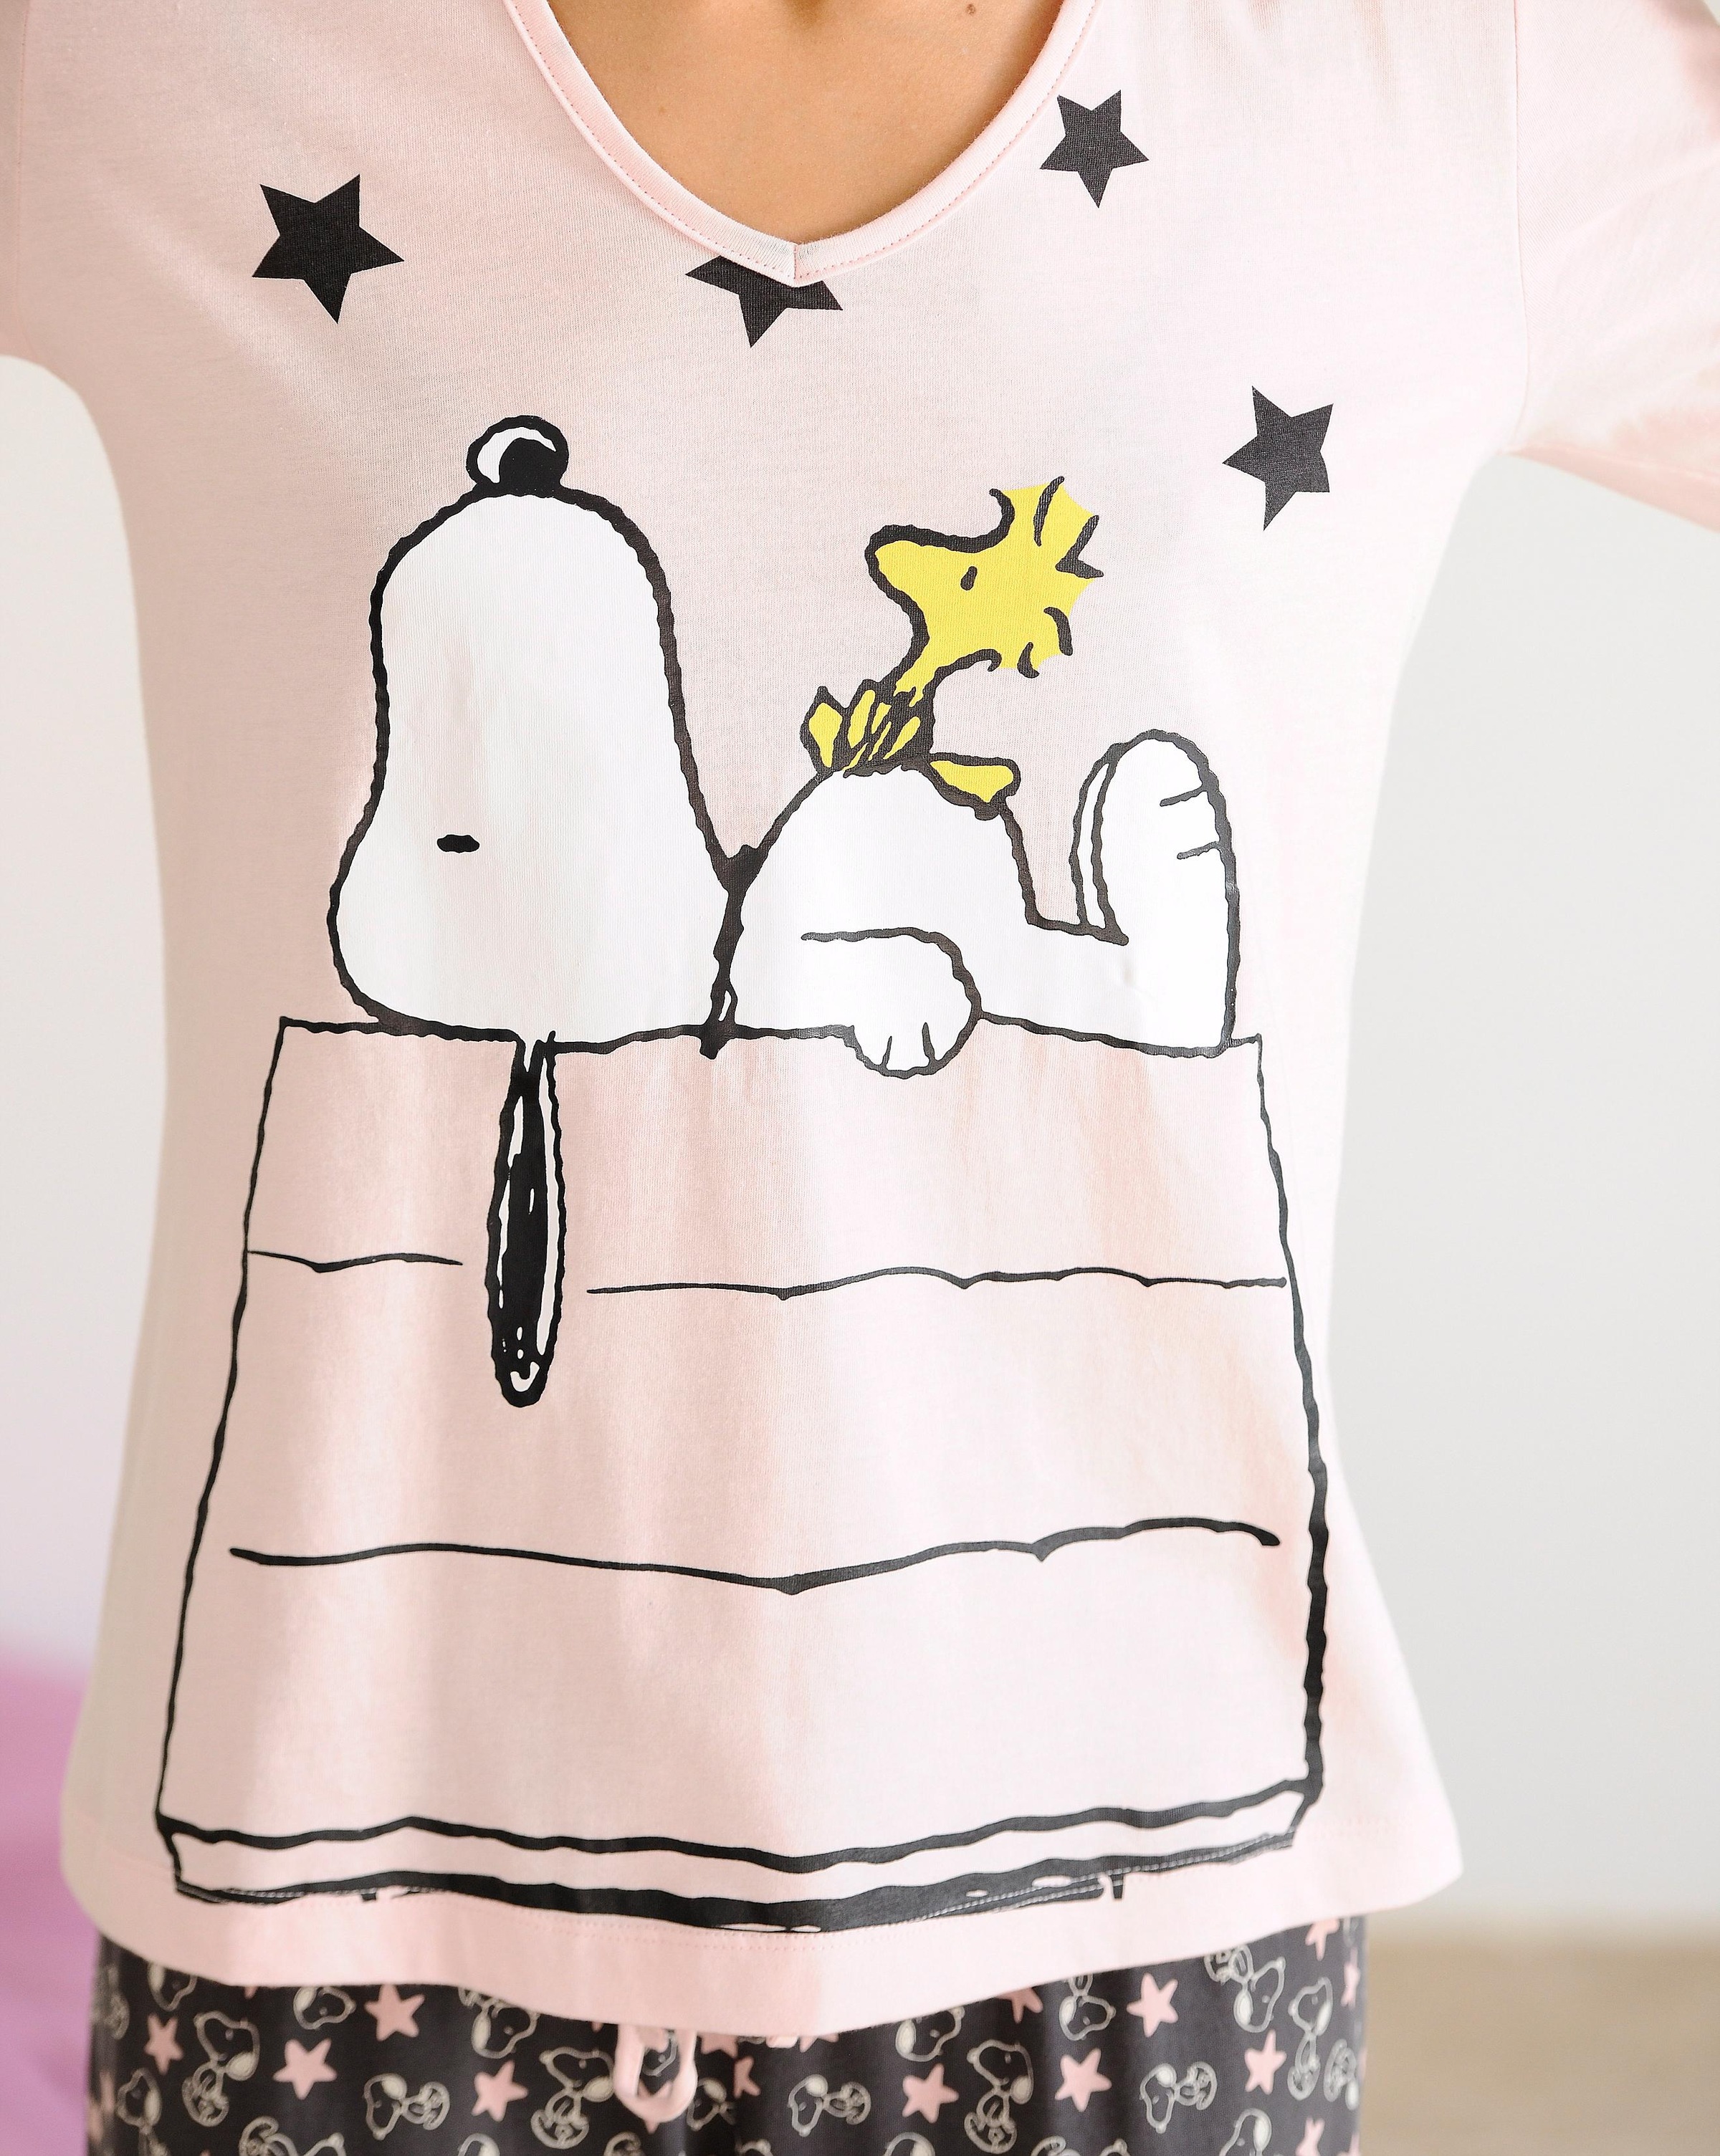 Peanuts Pyjama, (2 tlg., 1 Stück), in langer Form im niedlichen Snoopy- Design » LASCANA | Bademode, Unterwäsche & Lingerie online kaufen